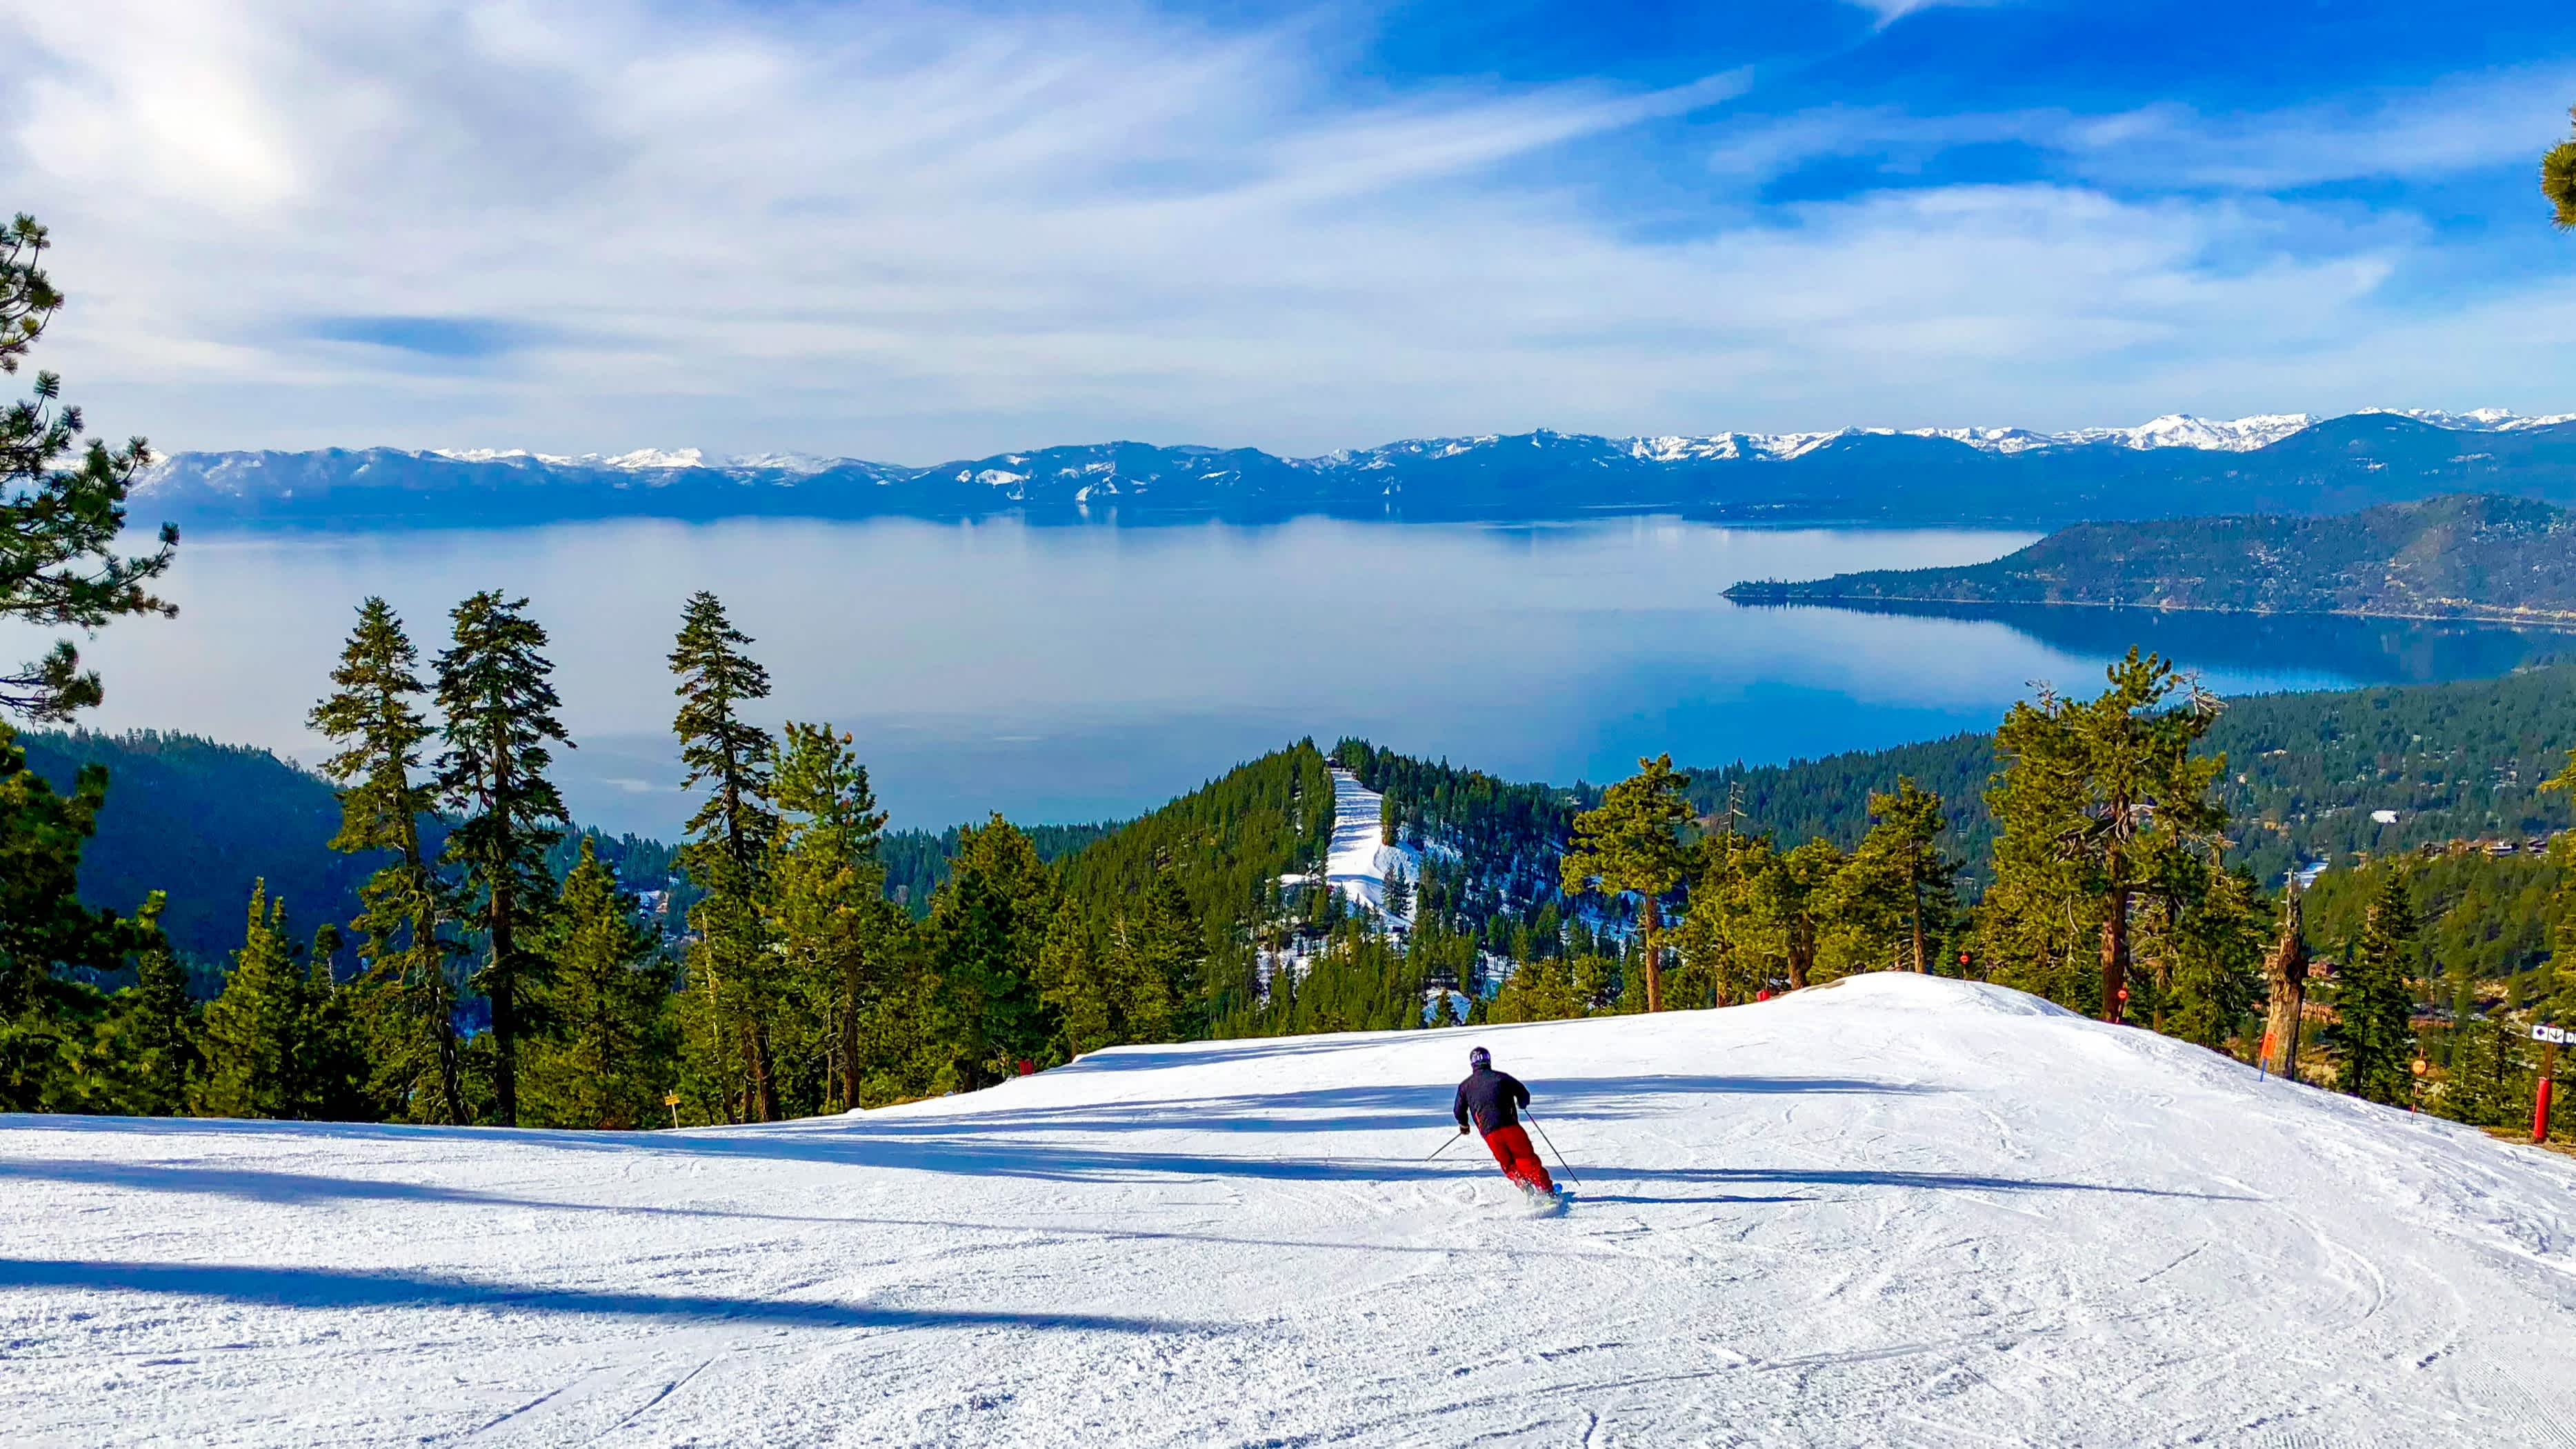 Un skieur en train de descendre une piste avec une vue panoramique sur le lac Tahoe en Californie, États-Unis